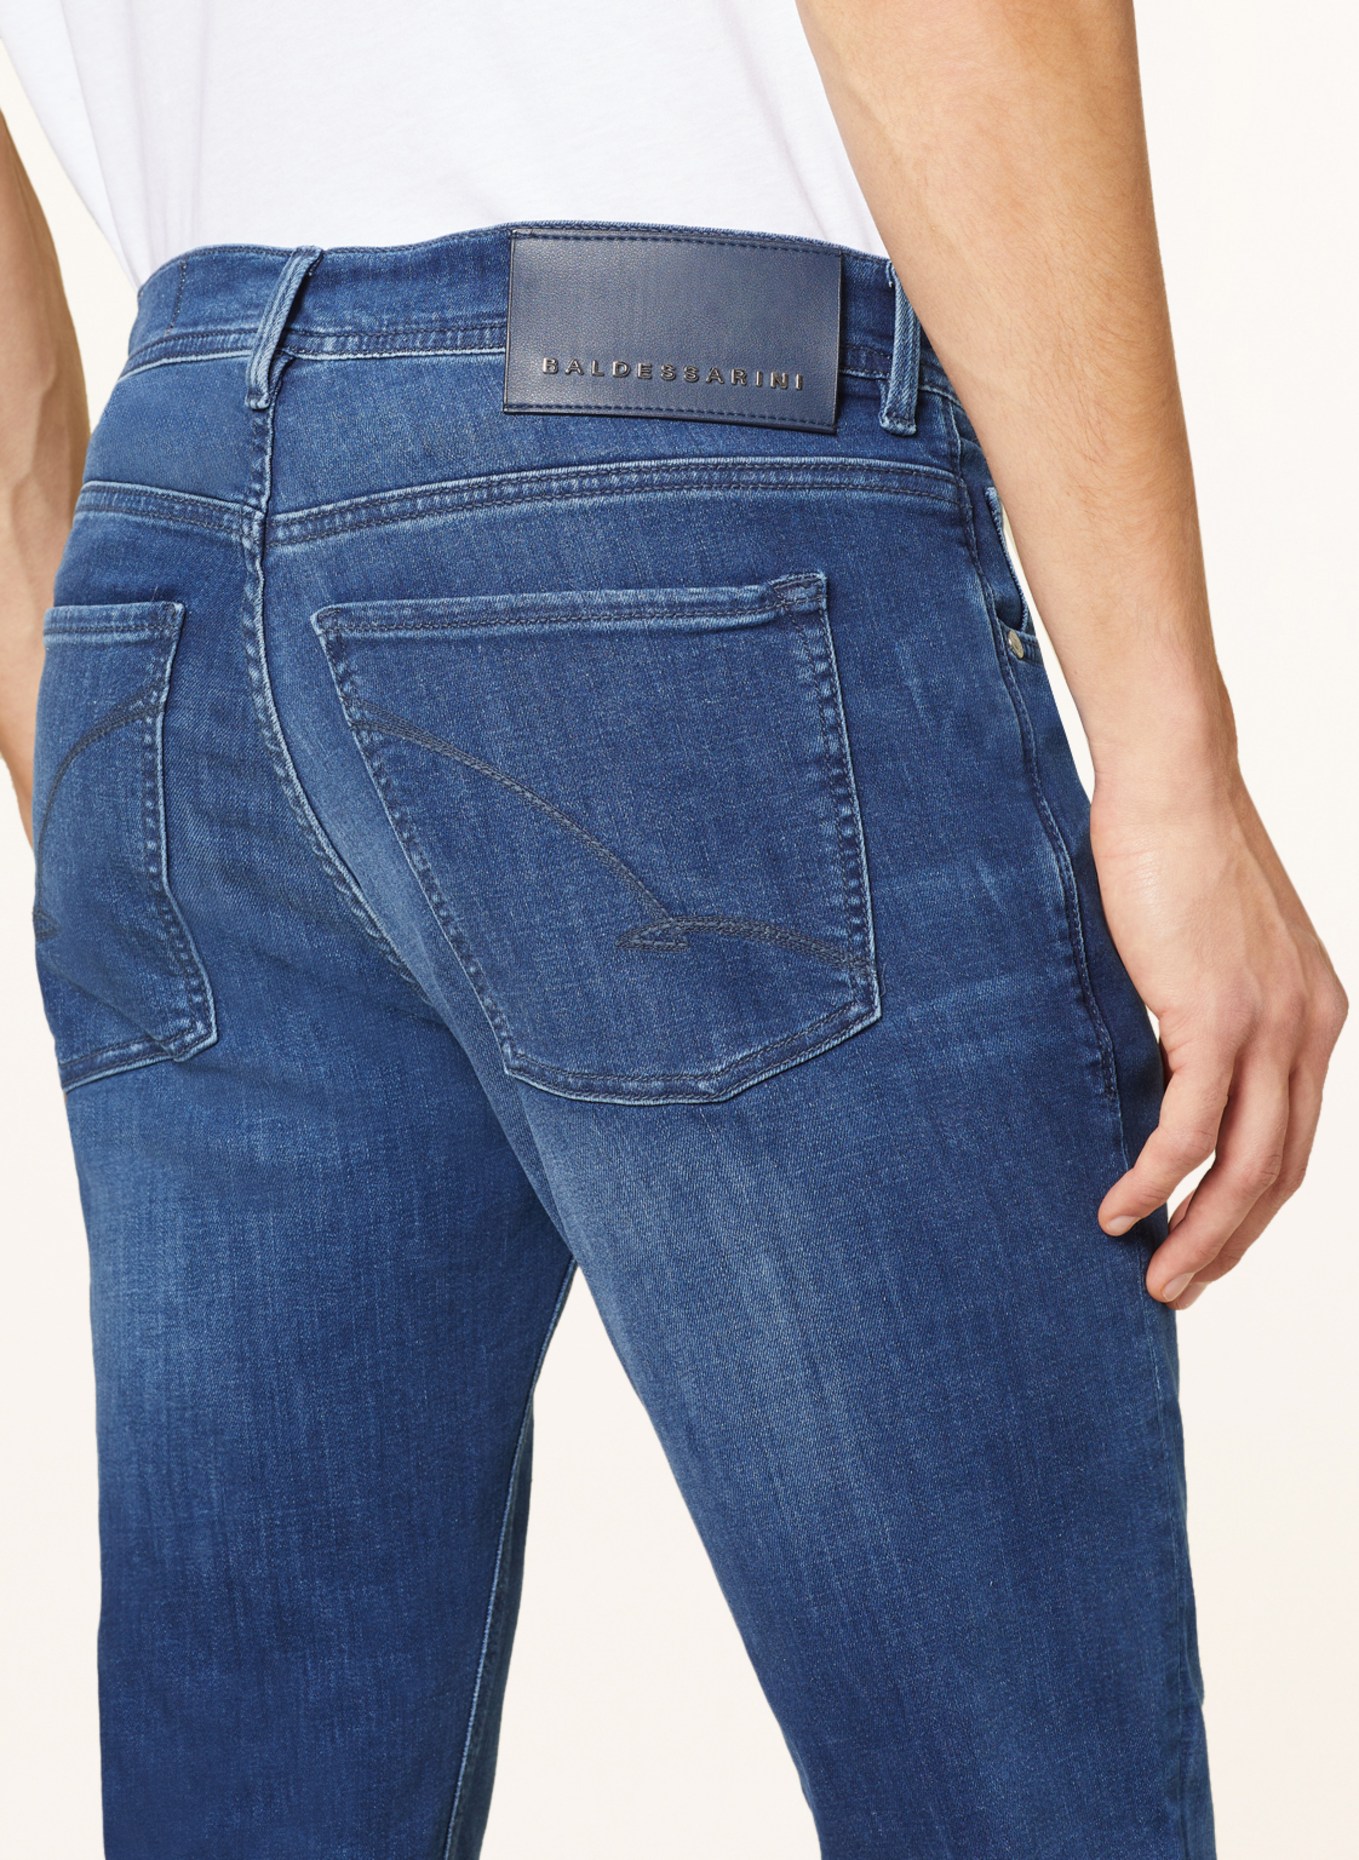 BALDESSARINI Jeans regular fit, Color: 6825 blue used whisker (Image 5)